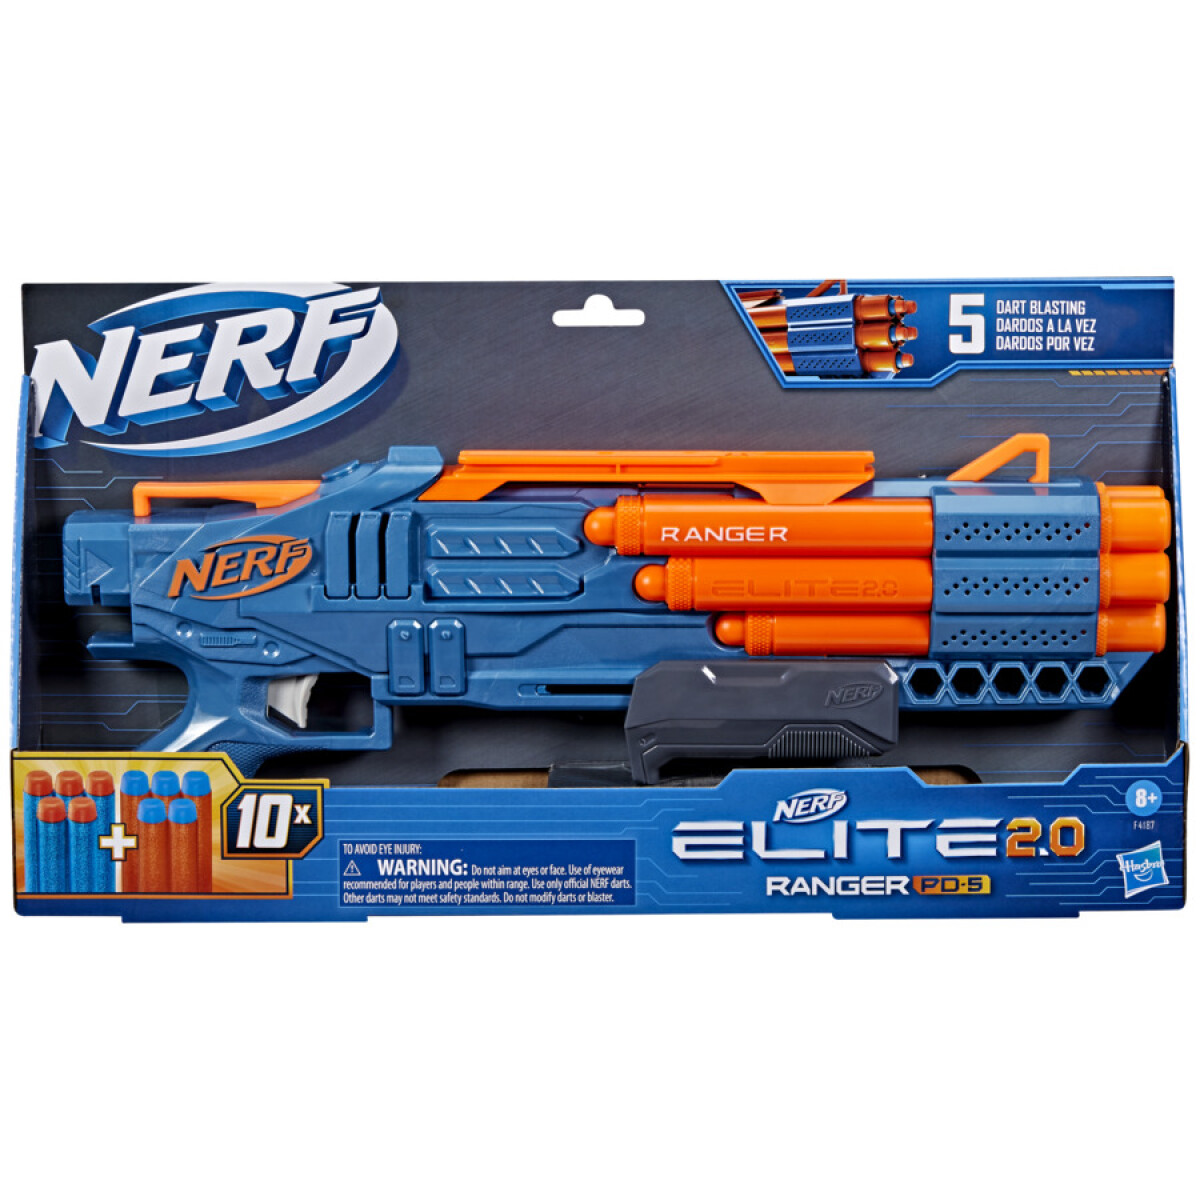 Pistola Nerf Elite 2.0 Ranger Pd 5 - 001 